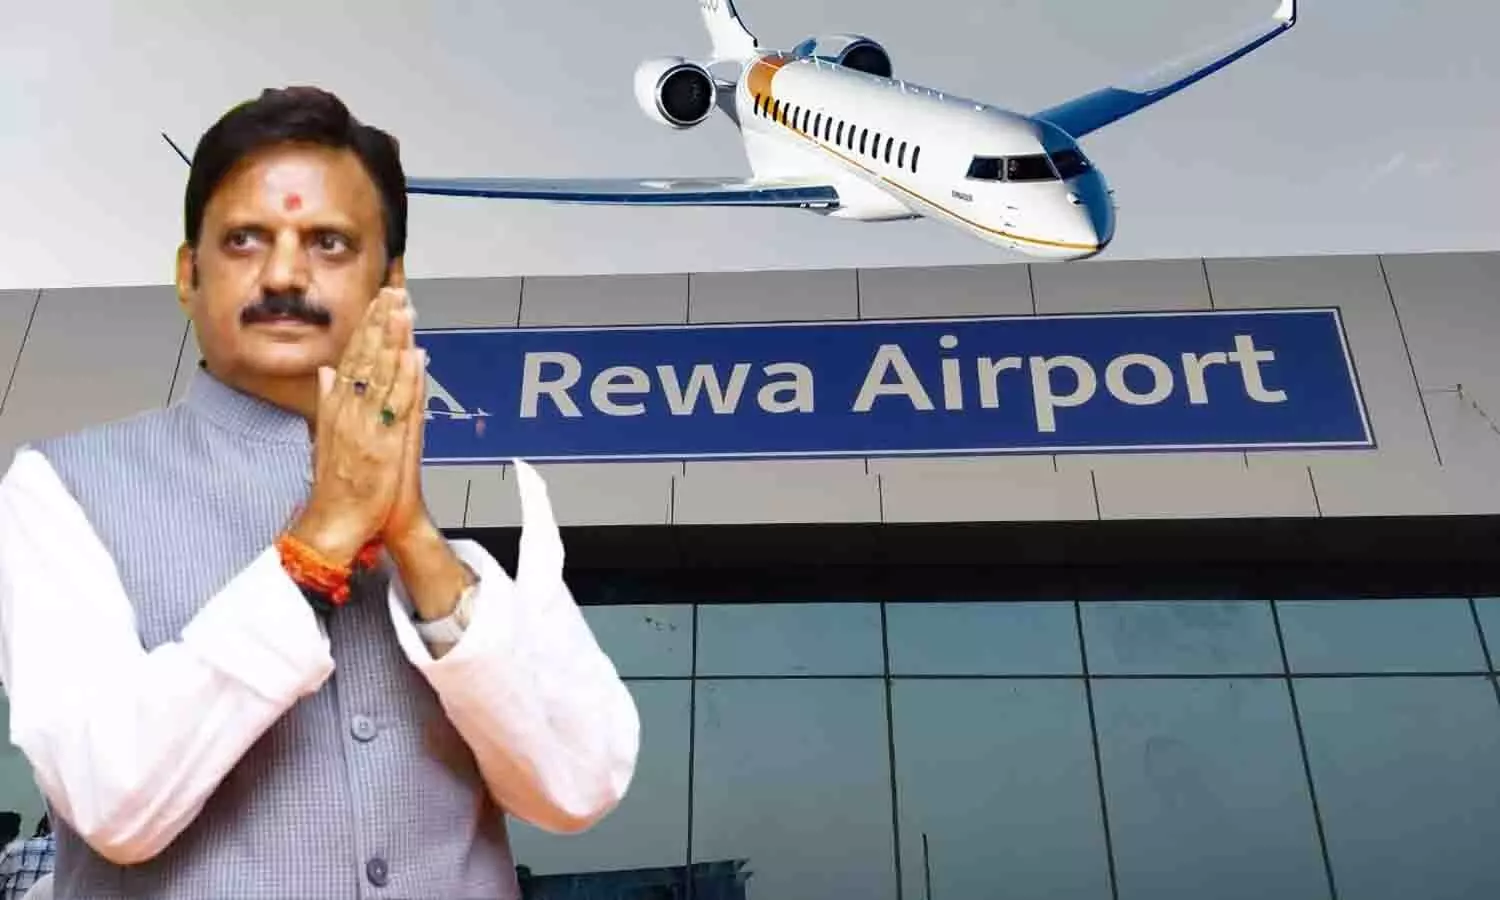 Rewa Airport से उड़ी पहली एयरक्राफ़्ट, उप मुख्यमंत्री राजेन्द्र शुक्ल पहले यात्री बनकर पहुंचे खजुराहो